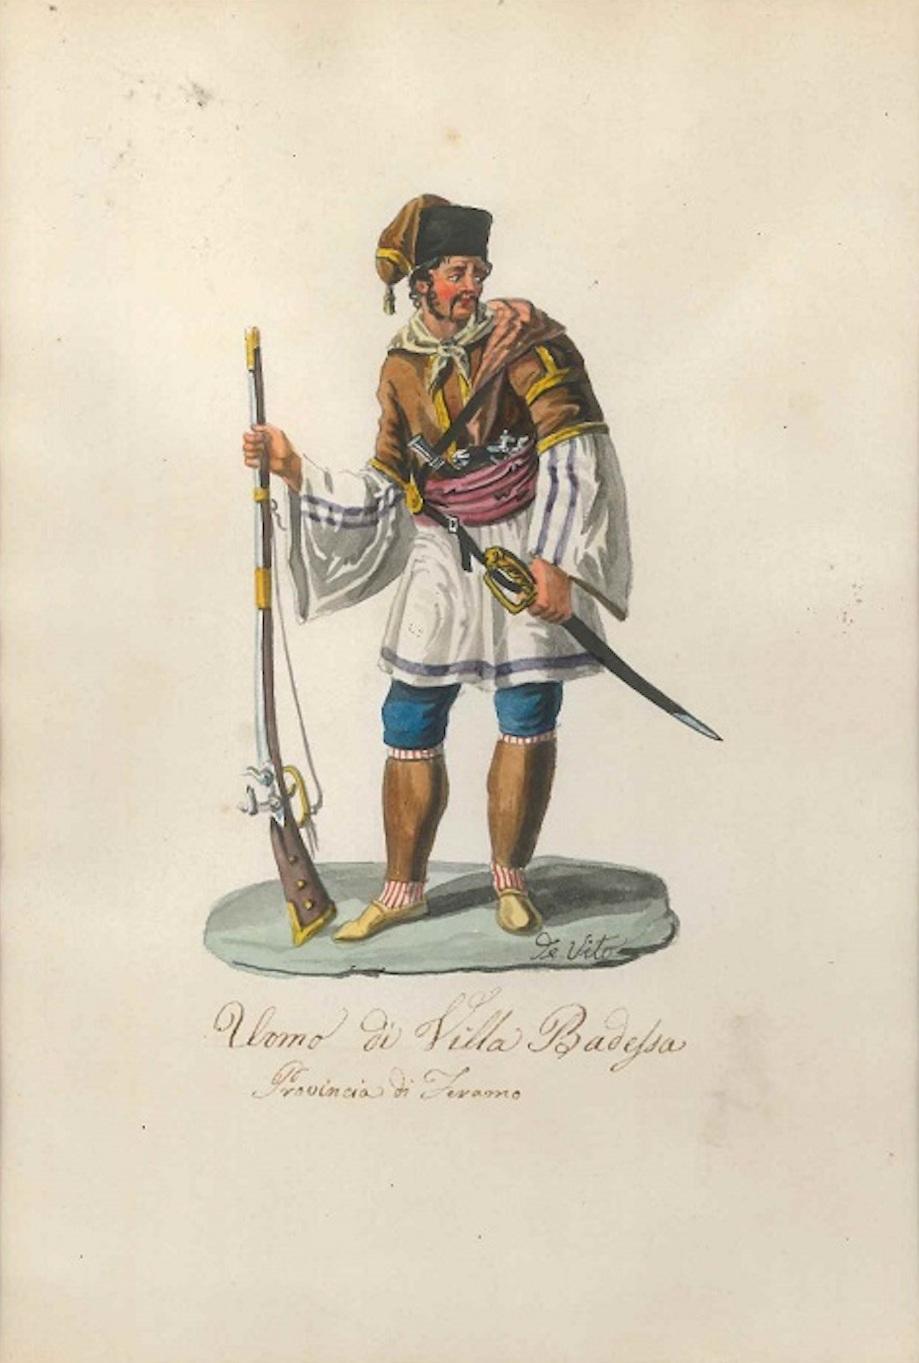 Michela De Vito Figurative Art - Man from Villa Badessa- Original Watercolor by M. De Vito - 1820 ca.